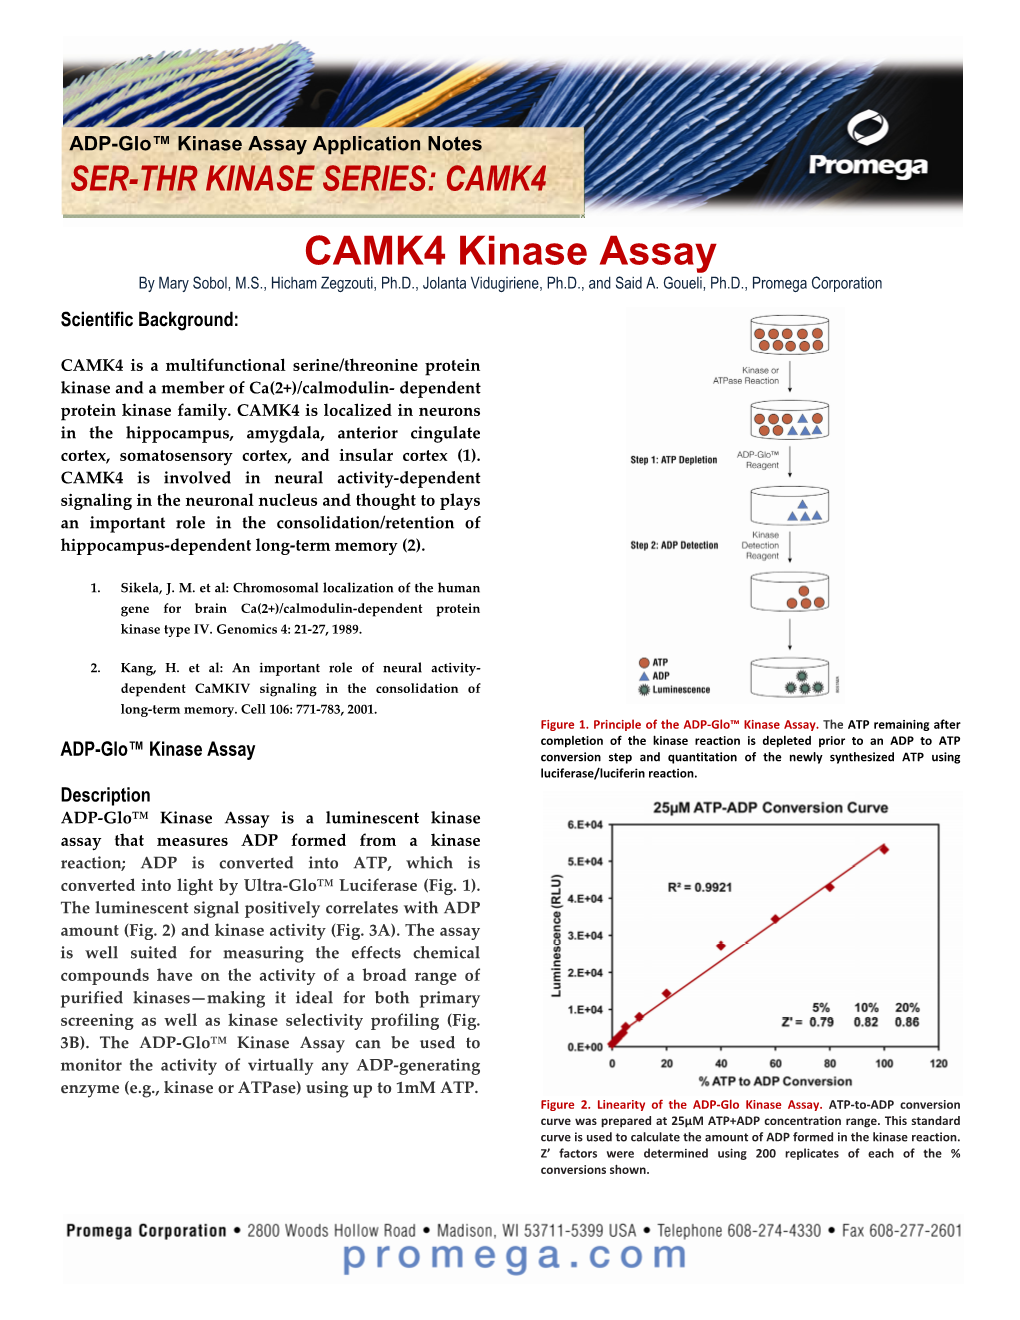 CAMK4 Kinase Enzyme System Application Notepdf